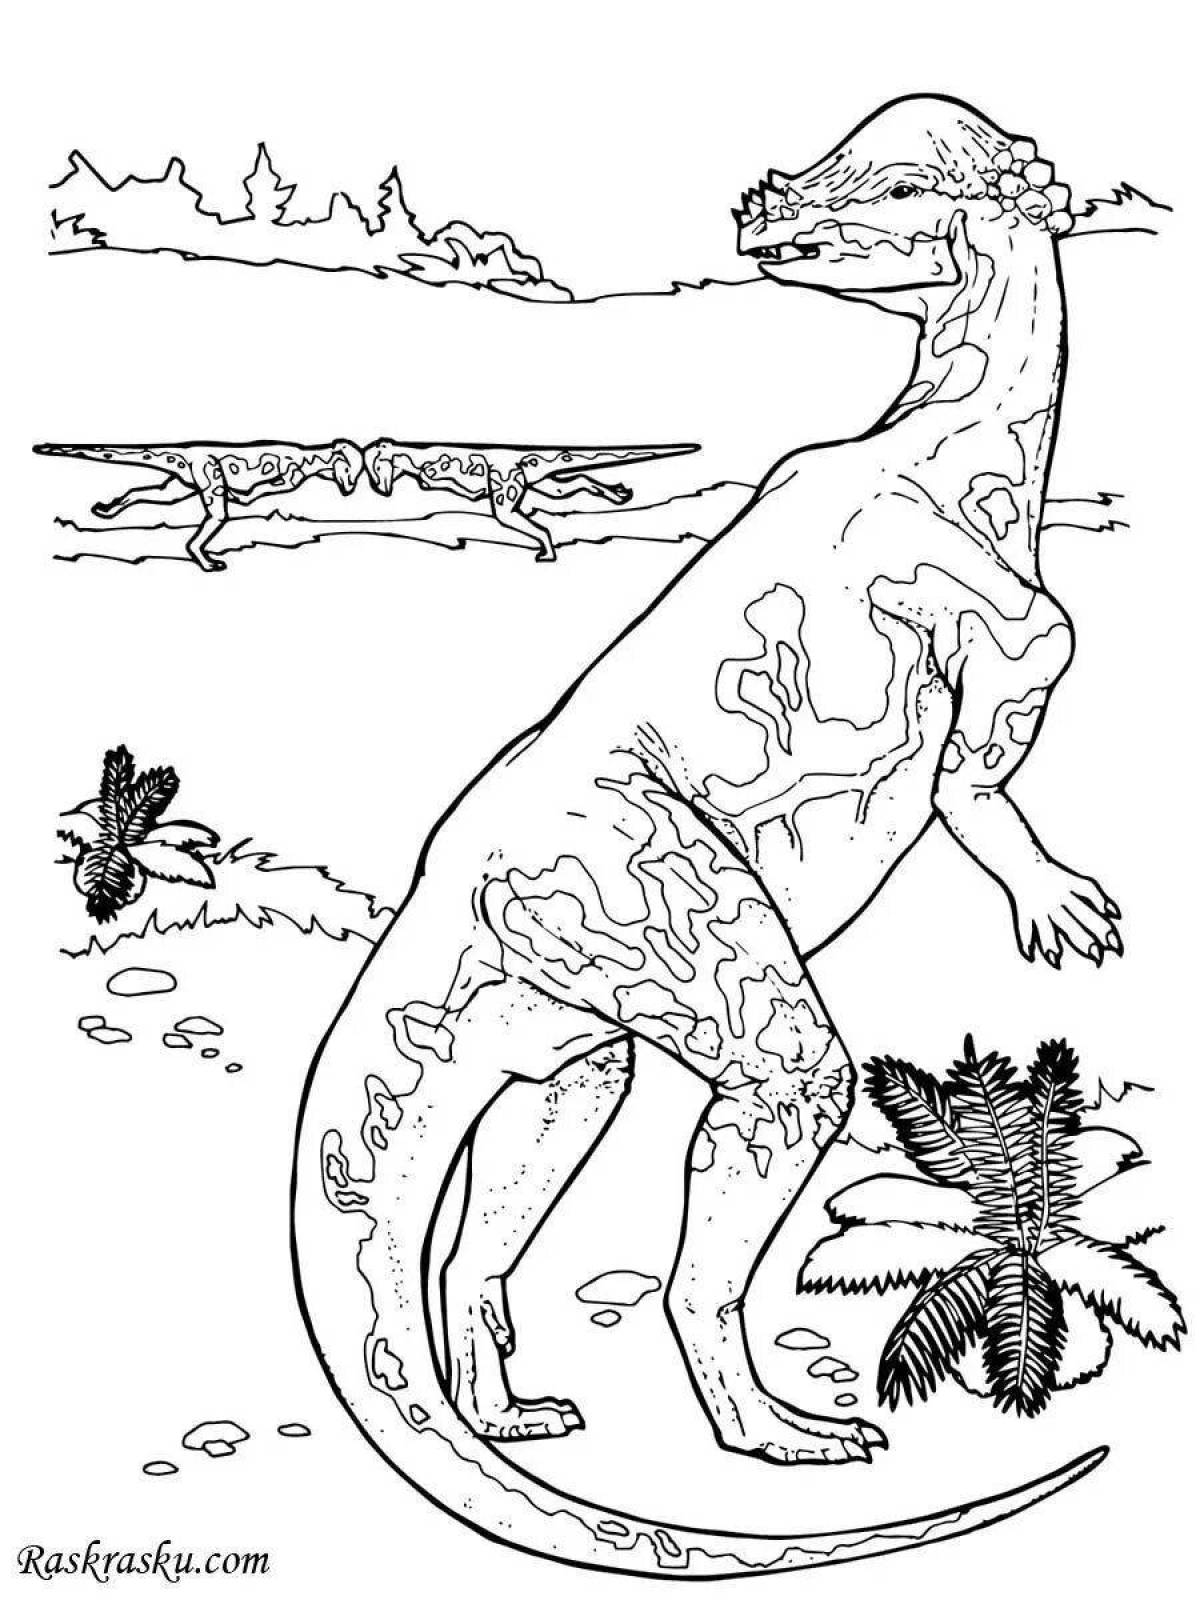 Glorious pachycephalosaurus coloring page